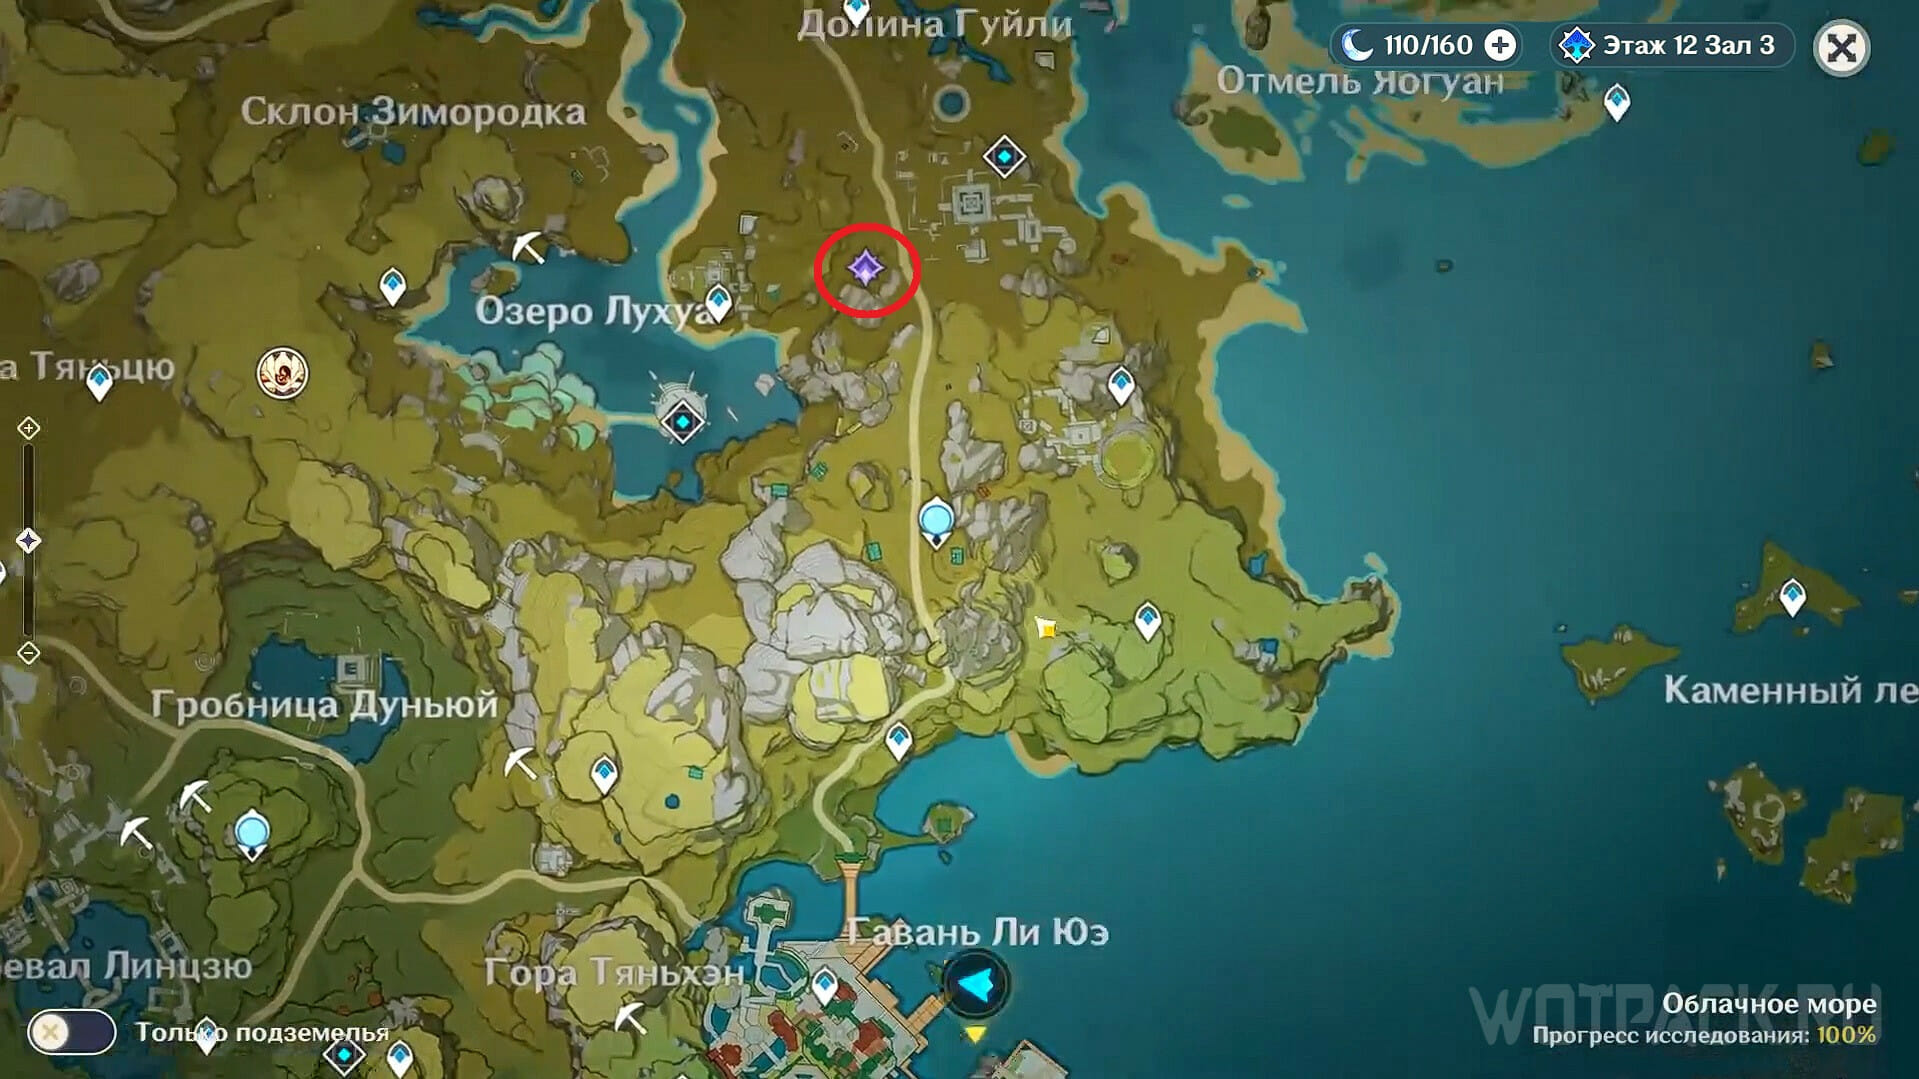 Места рыбалки ли юэ. Стеклянные колокольчики Genshin Impact на карте. Озеро Лухуа на карте Геншин. Карта стеклянных колокольчиков Геншин Импакт. Пейзаж Лухуа Геншин.